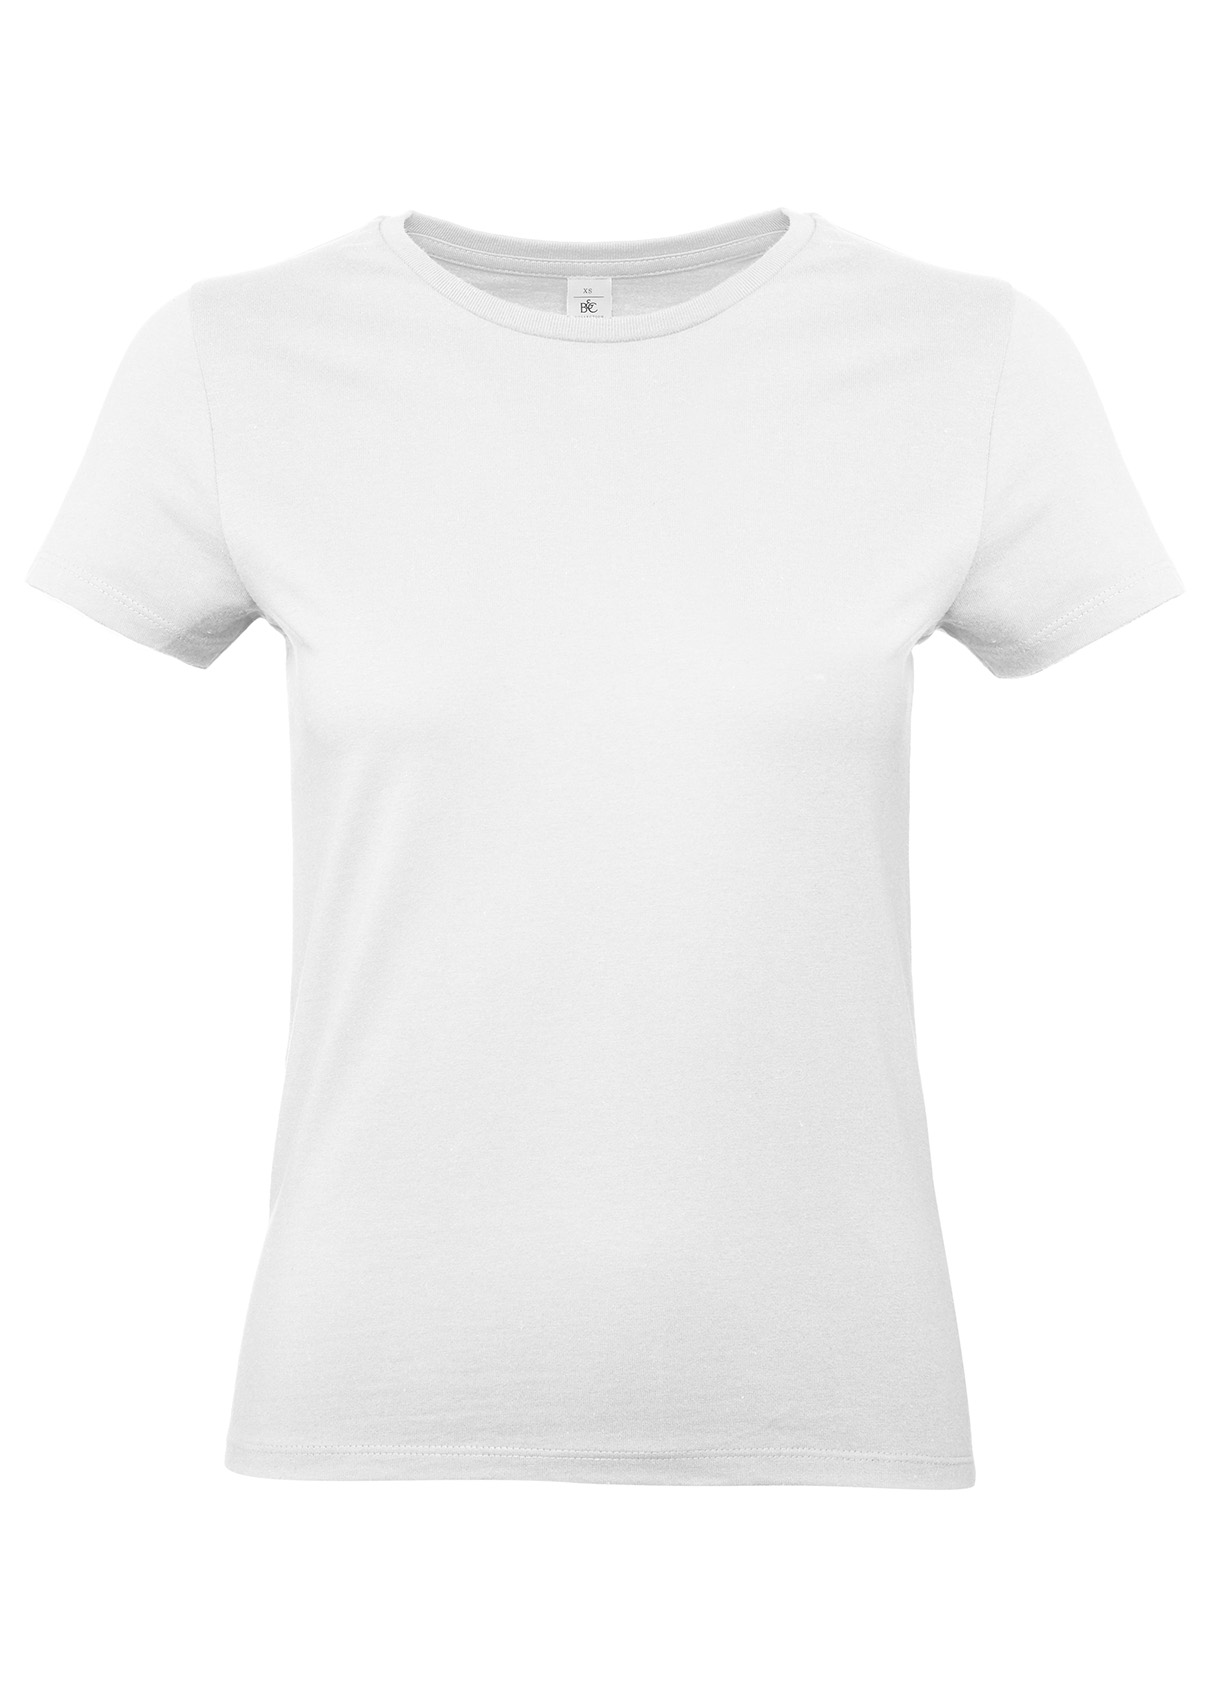 T-shirt FEMME 100% Coton